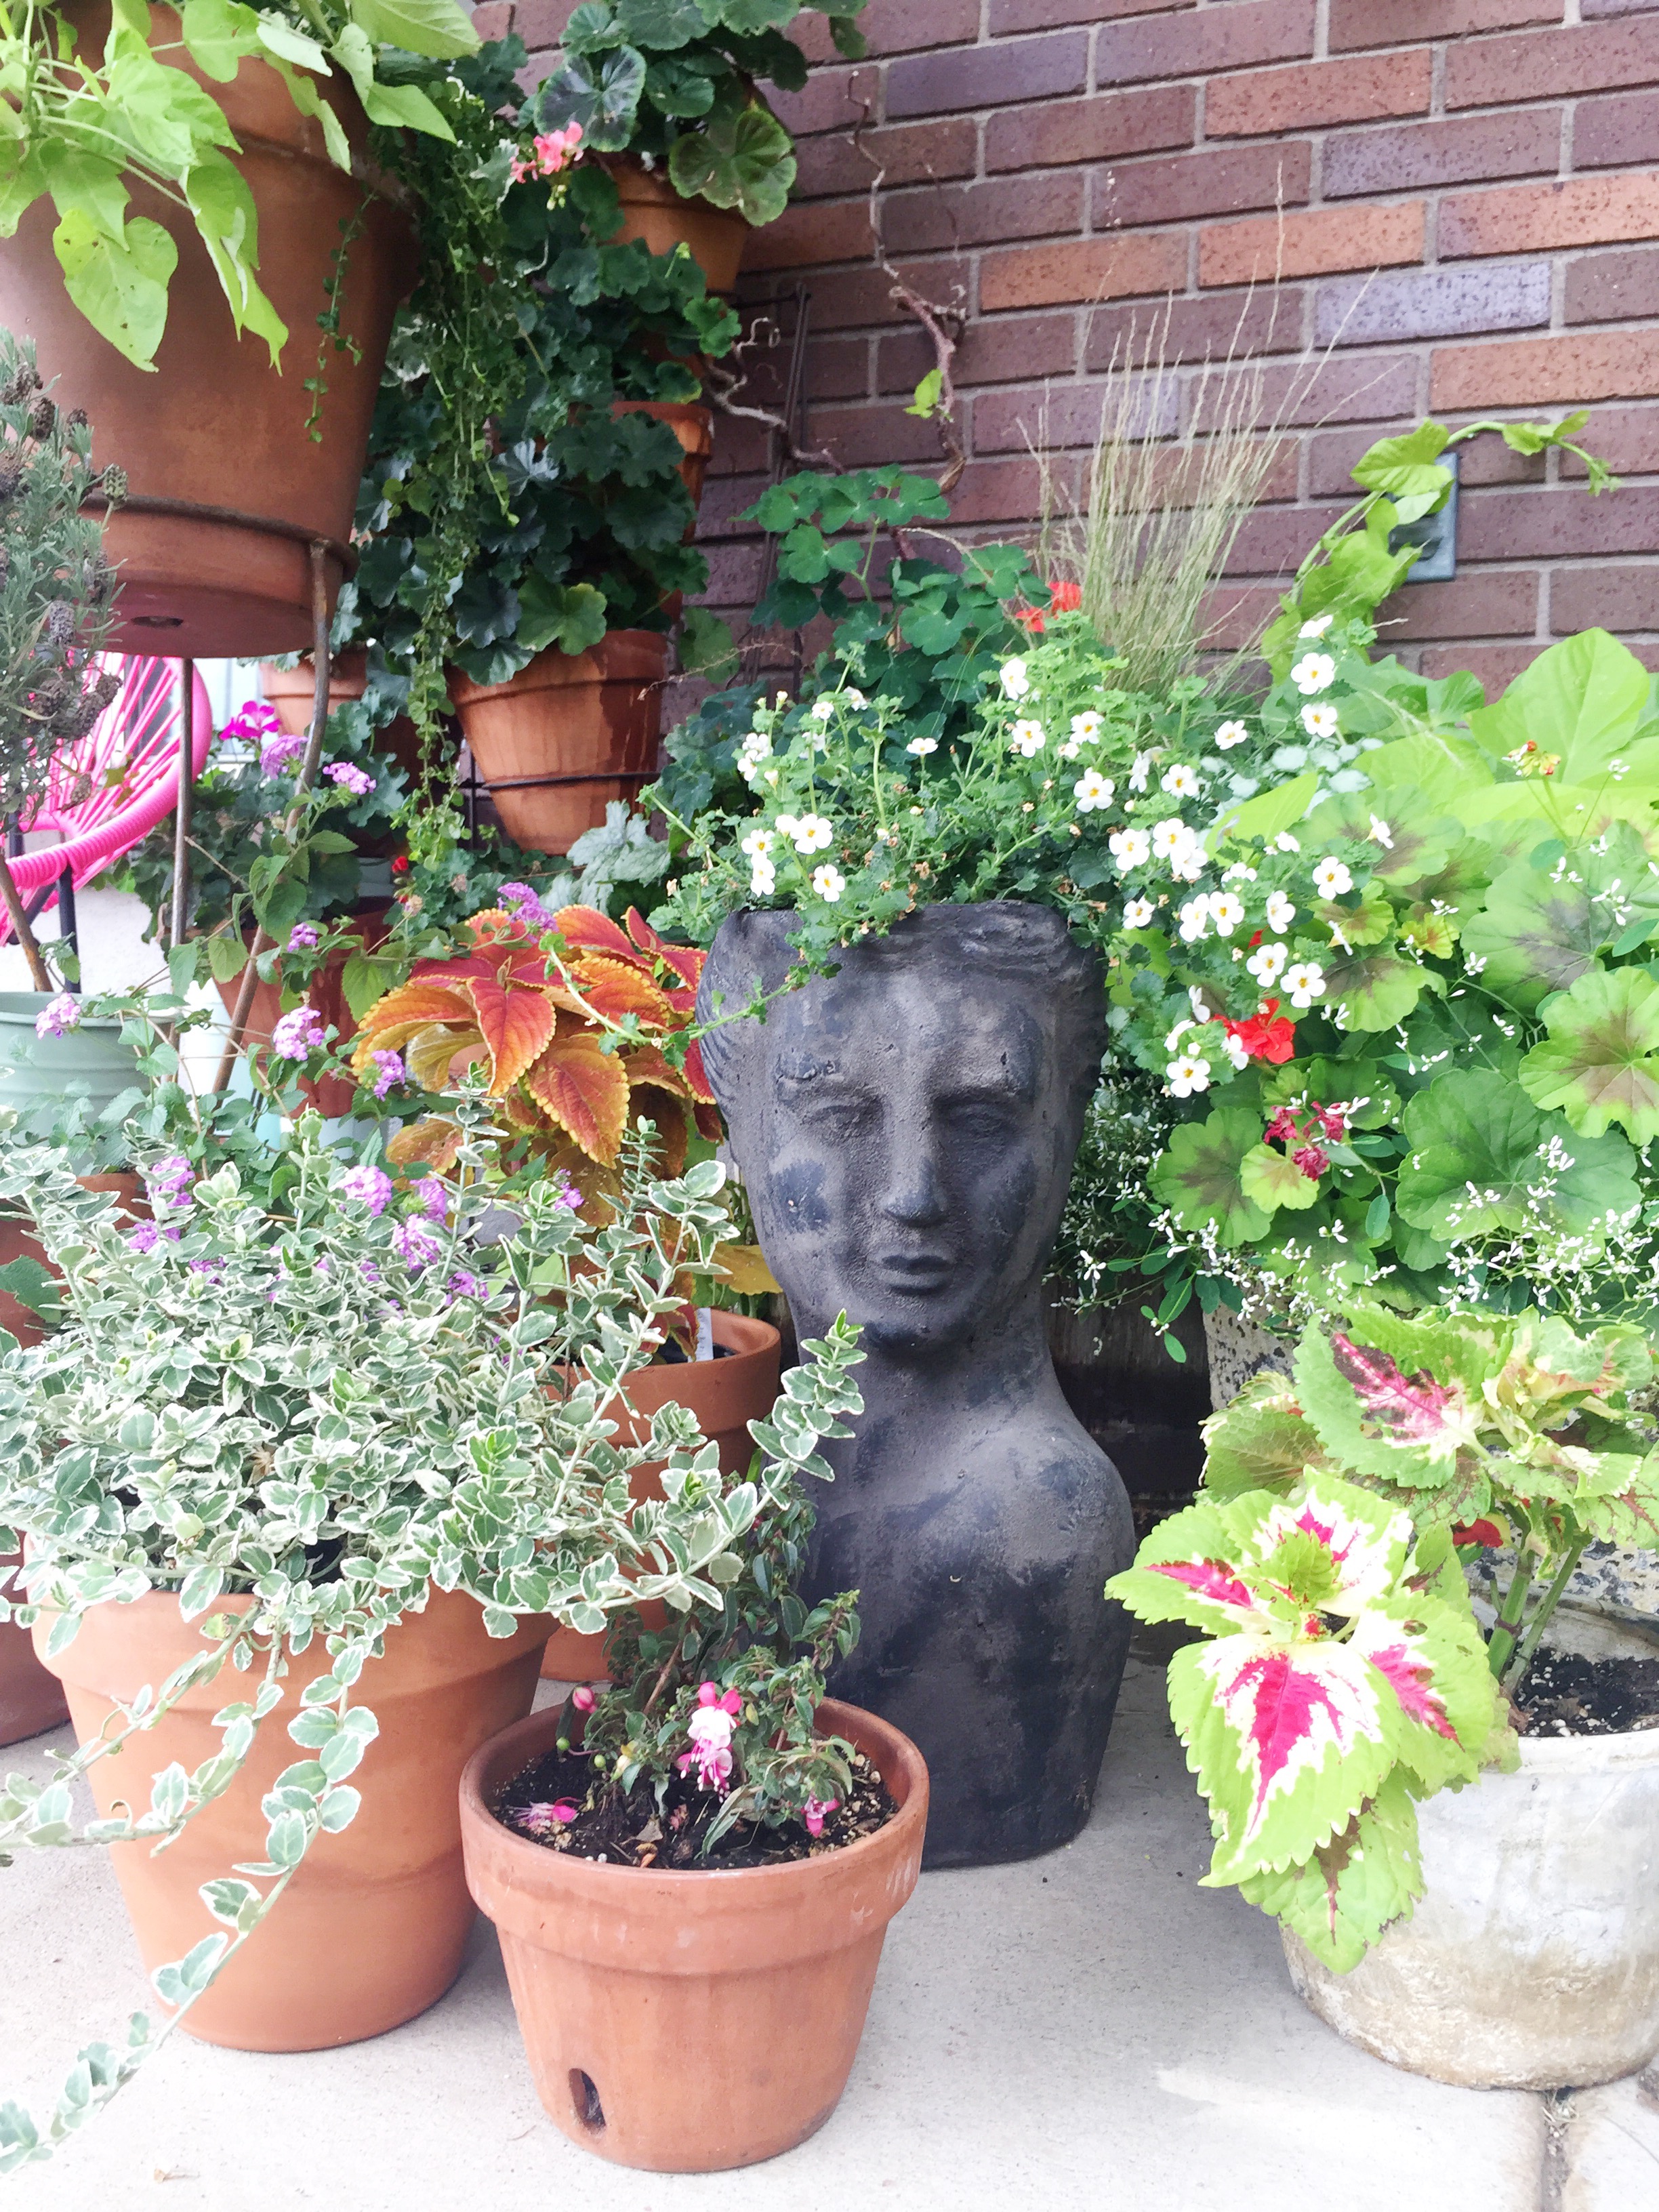 planter garden with a sculptural head planter